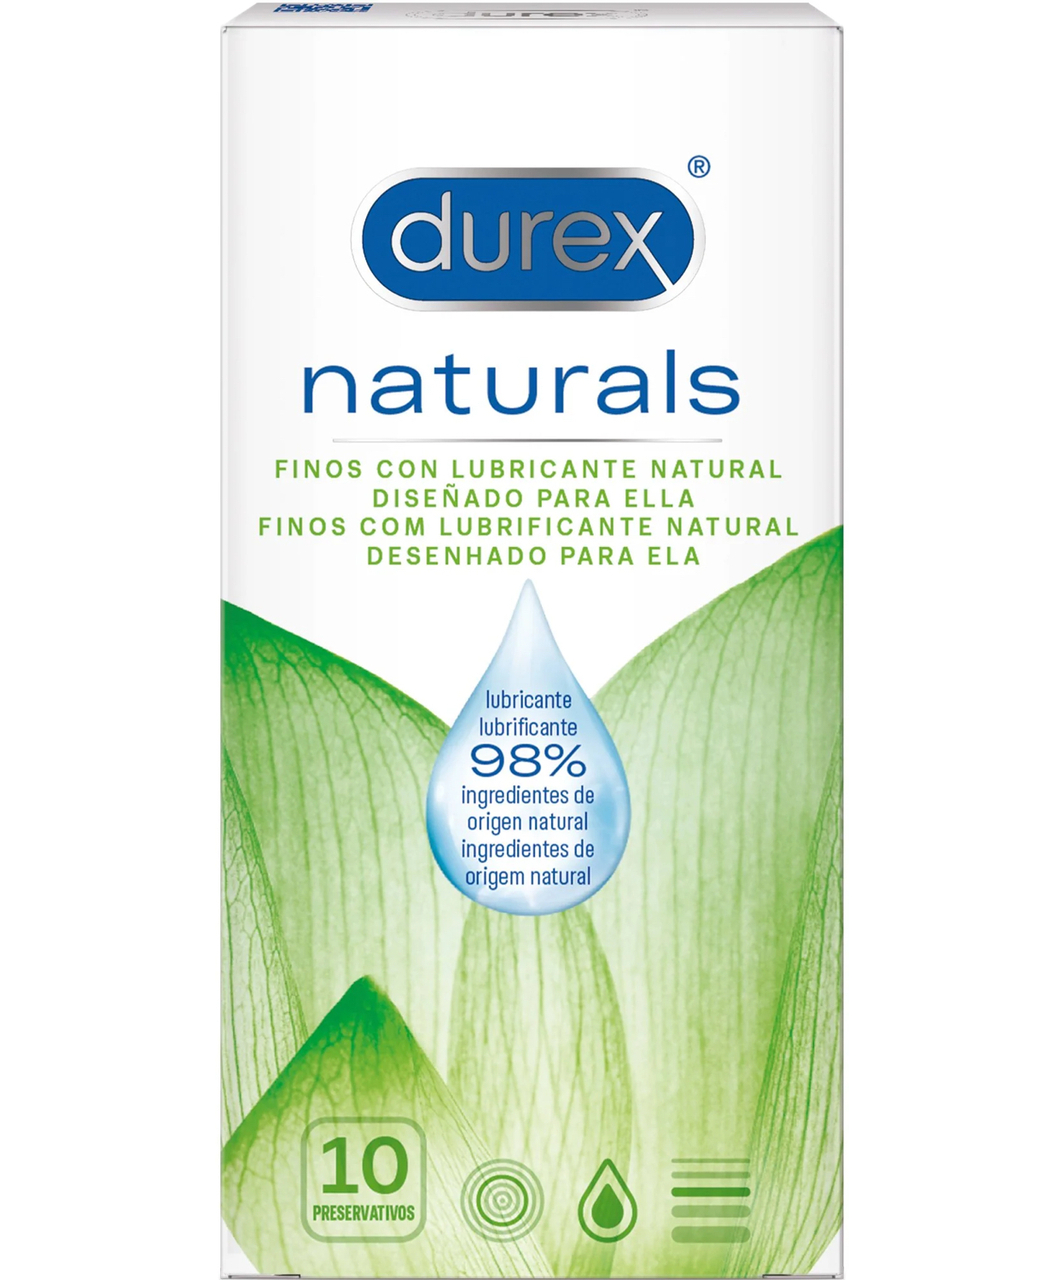 Durex Naturals condoms (10 pcs)